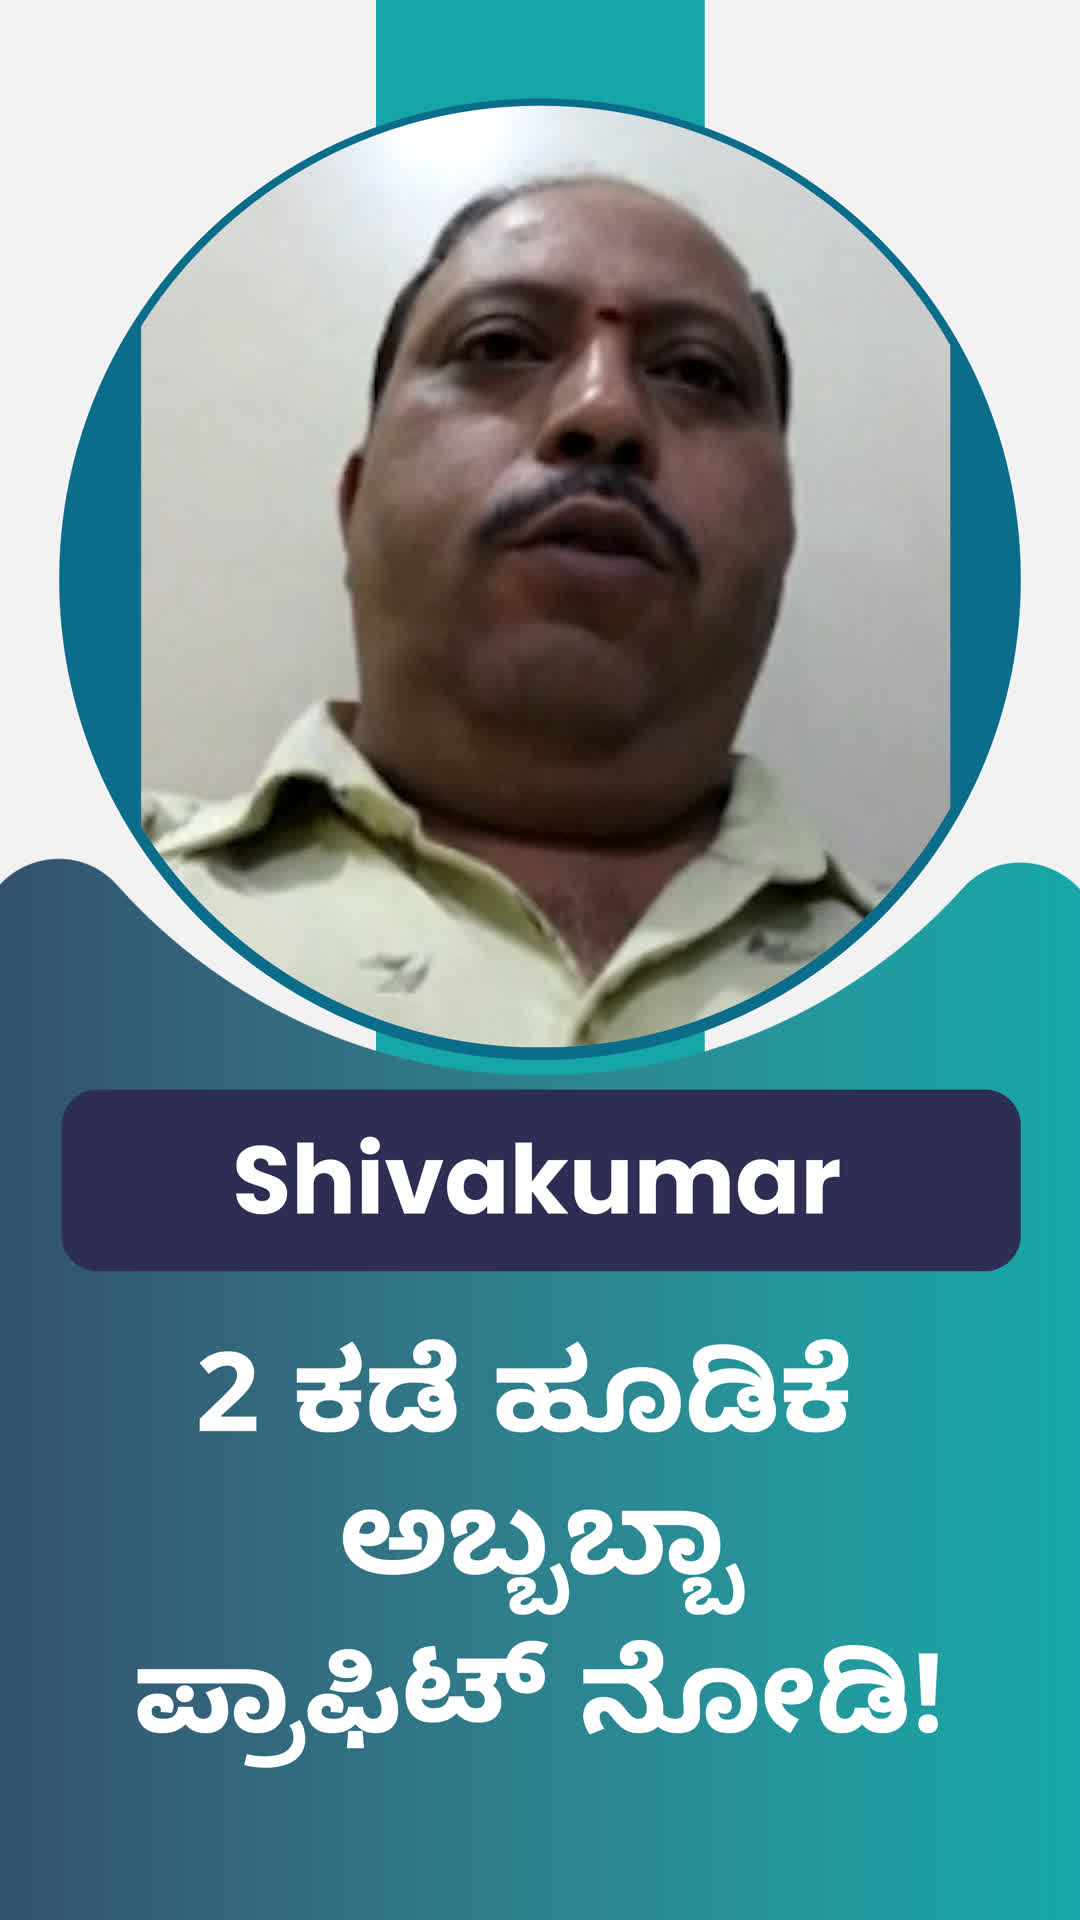 Shivakumar M 's Honest Review of ffreedom app - Bengaluru City ,Karnataka